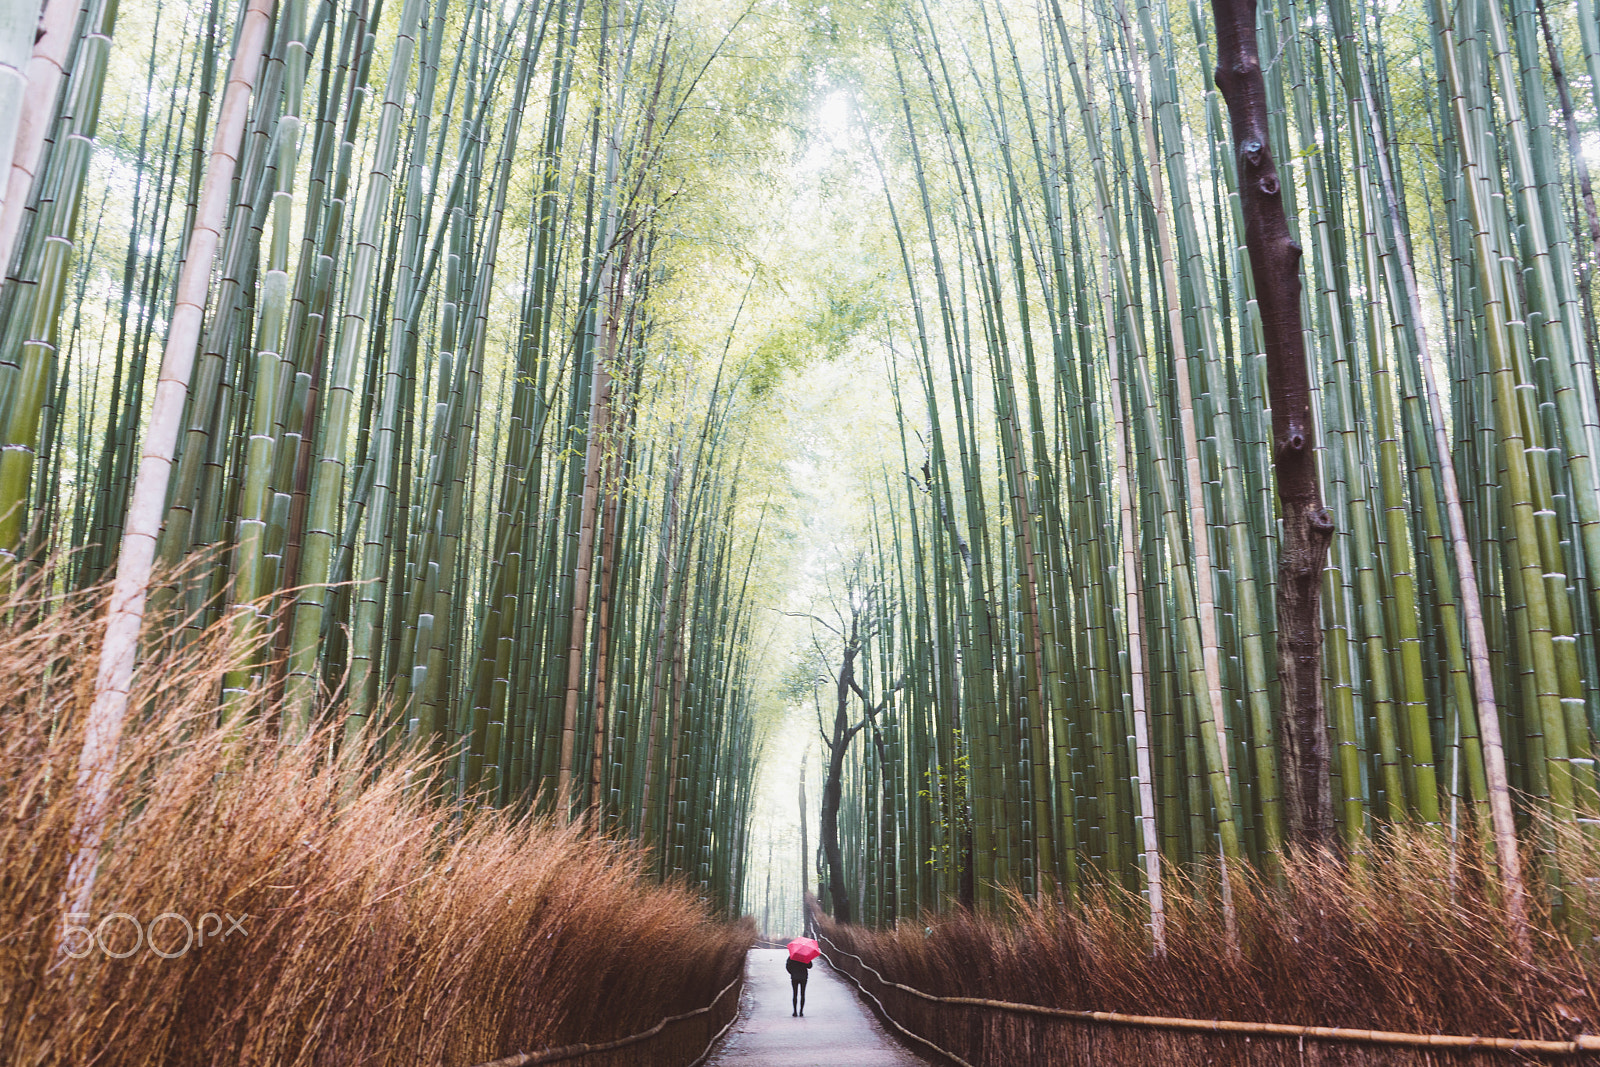 Sony a7R II sample photo. Arashiyama bamboo forrest photography